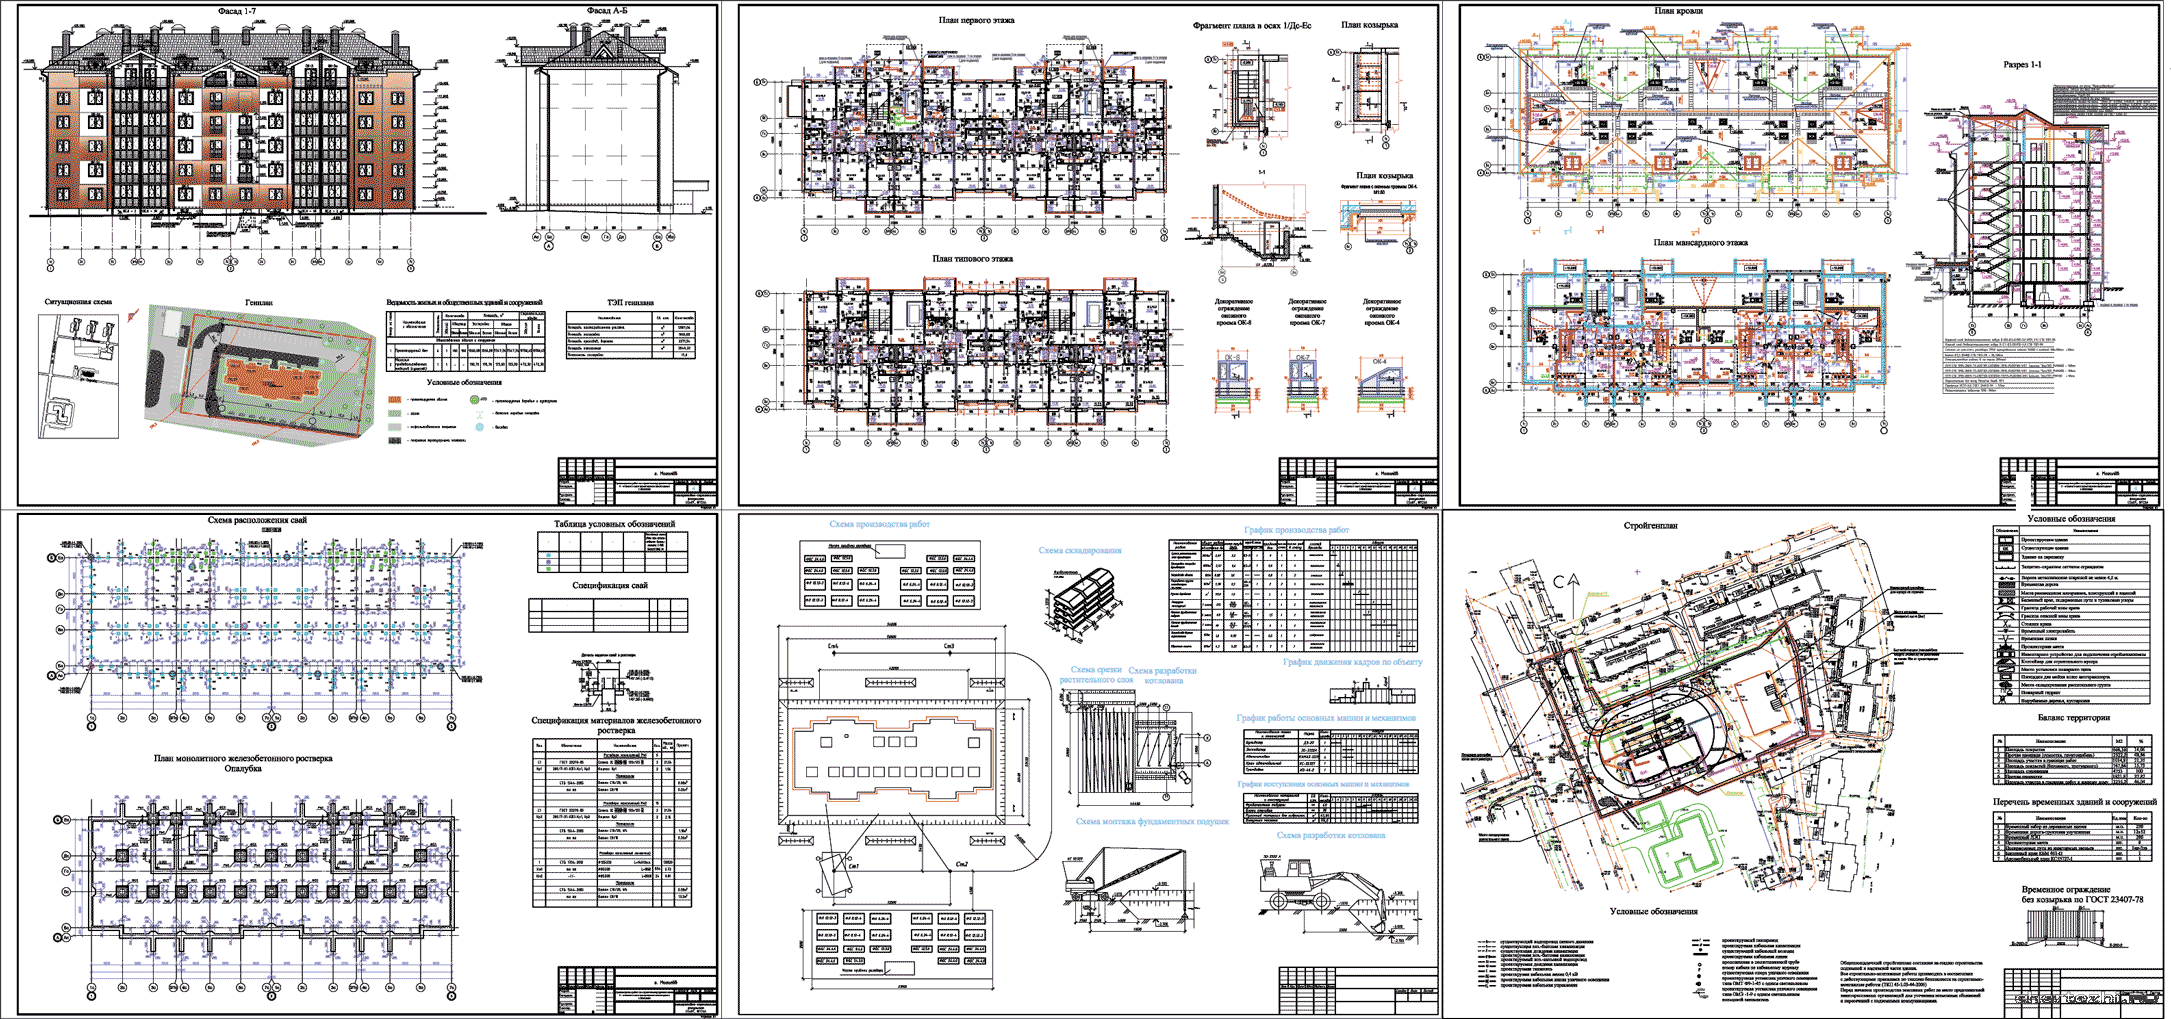 Дипломный проект - Производство работ по строительству нулевого цикла 6-ти этажного многоквартирного жилого дома 42,0 х 13,5 м в г. Могилев